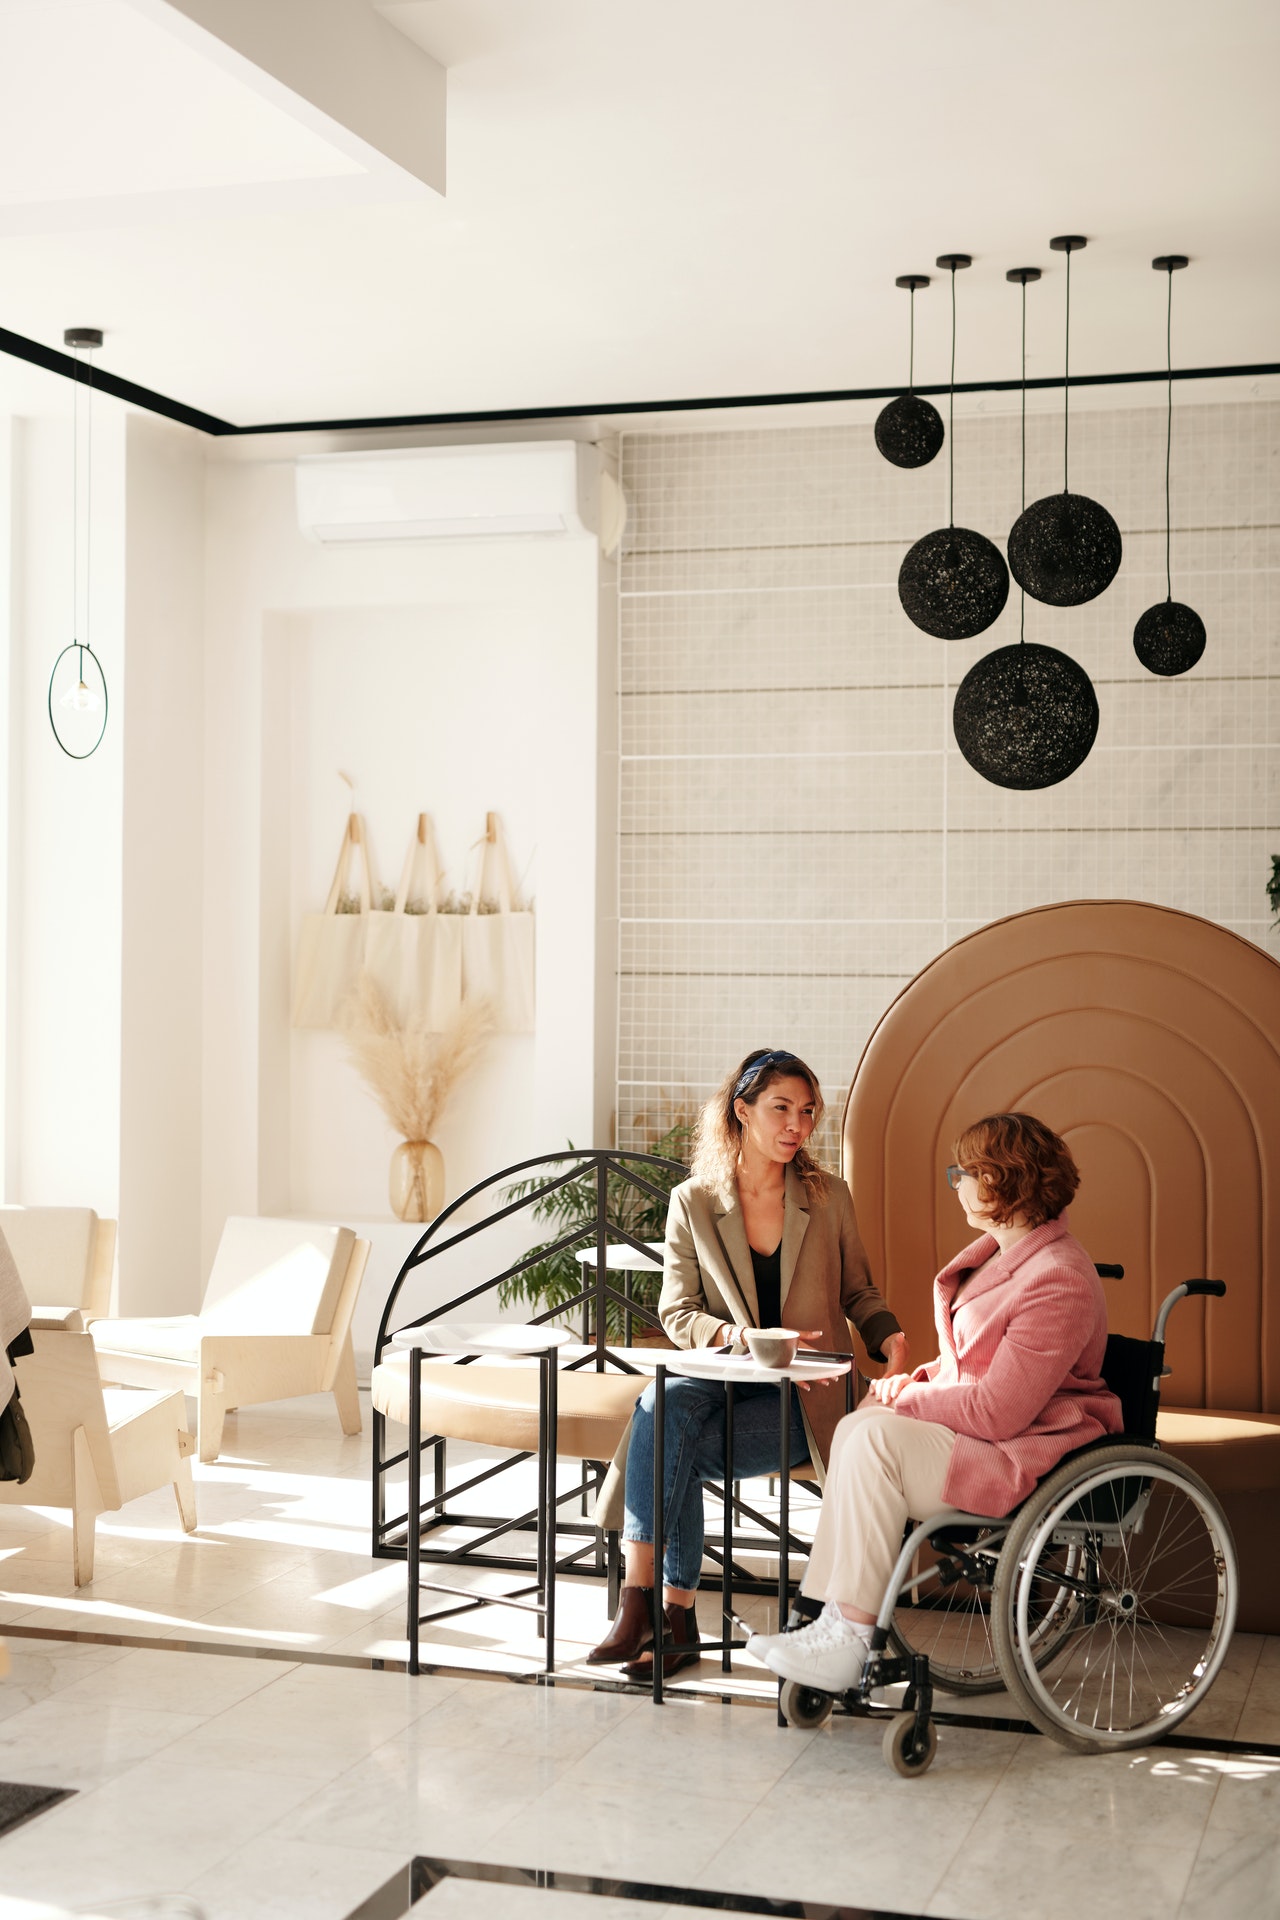 Žena za stolíkom a žena na invalidnom vozíku sa spolu rozprávajú